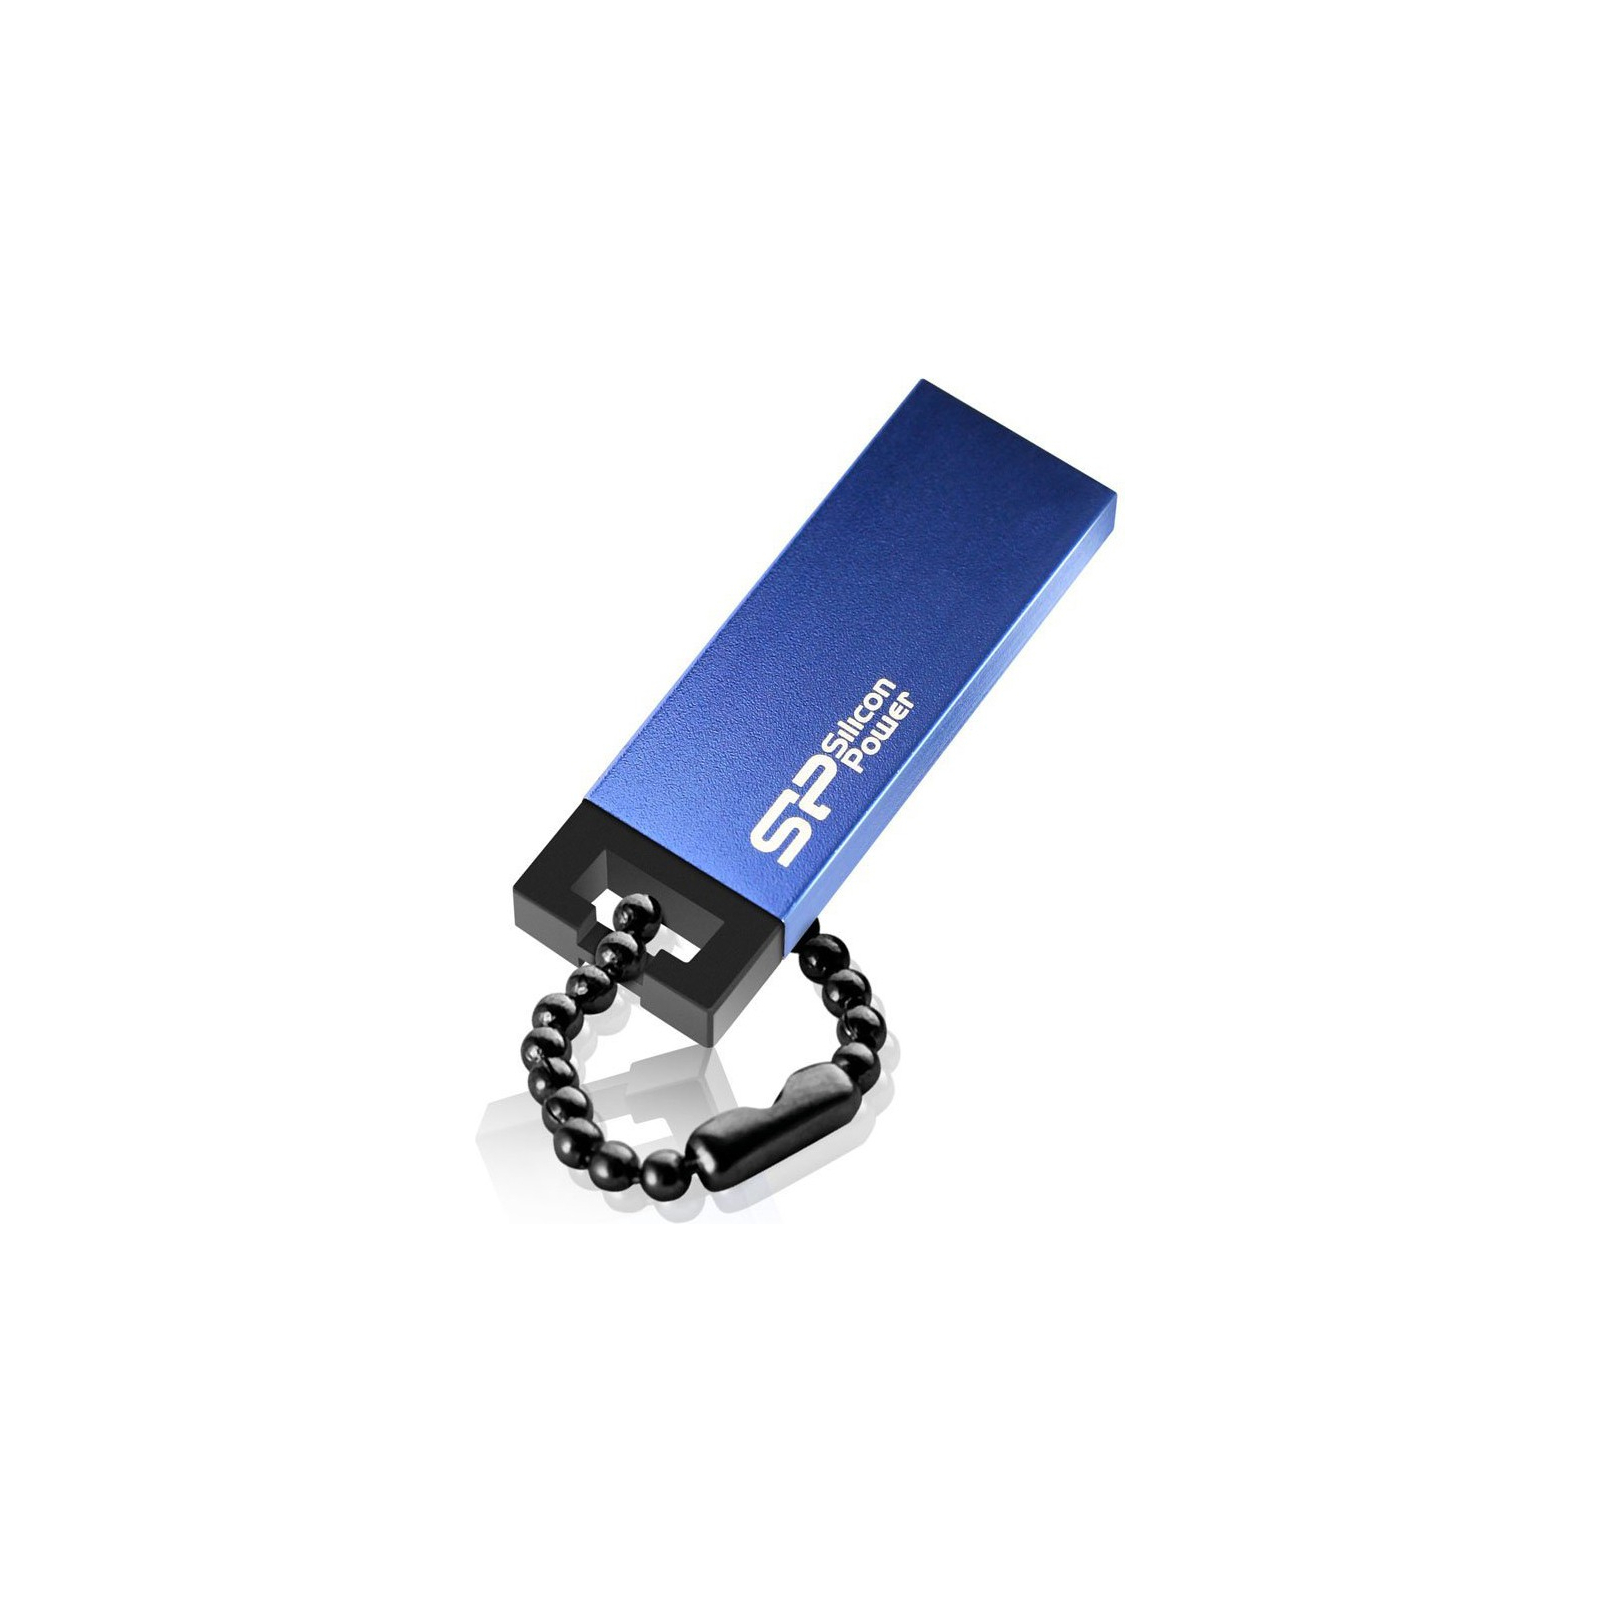 USB флеш накопитель Silicon Power 64GB Touch 835 Blue (SP064GBUF2835V1B) изображение 2